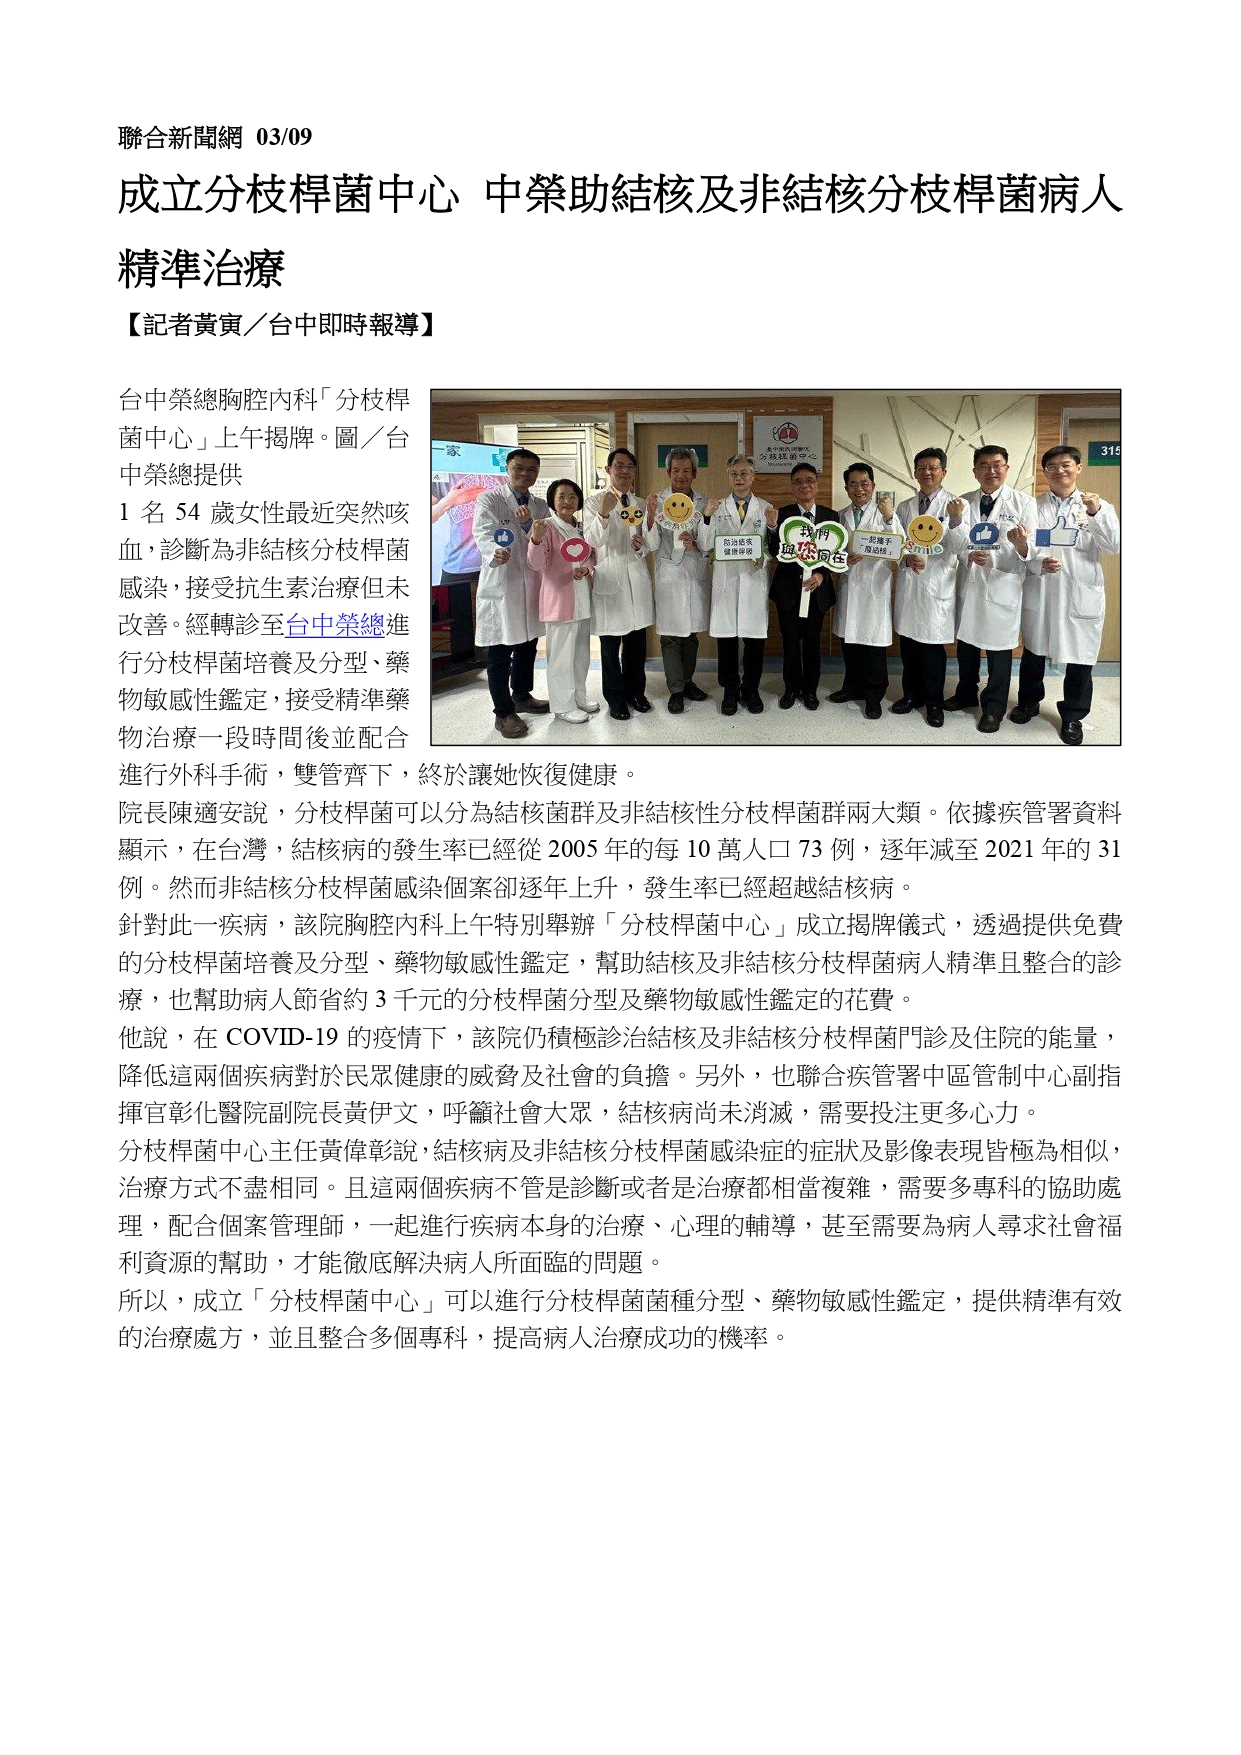 臺中榮總成立全國第一家分枝桿菌中心